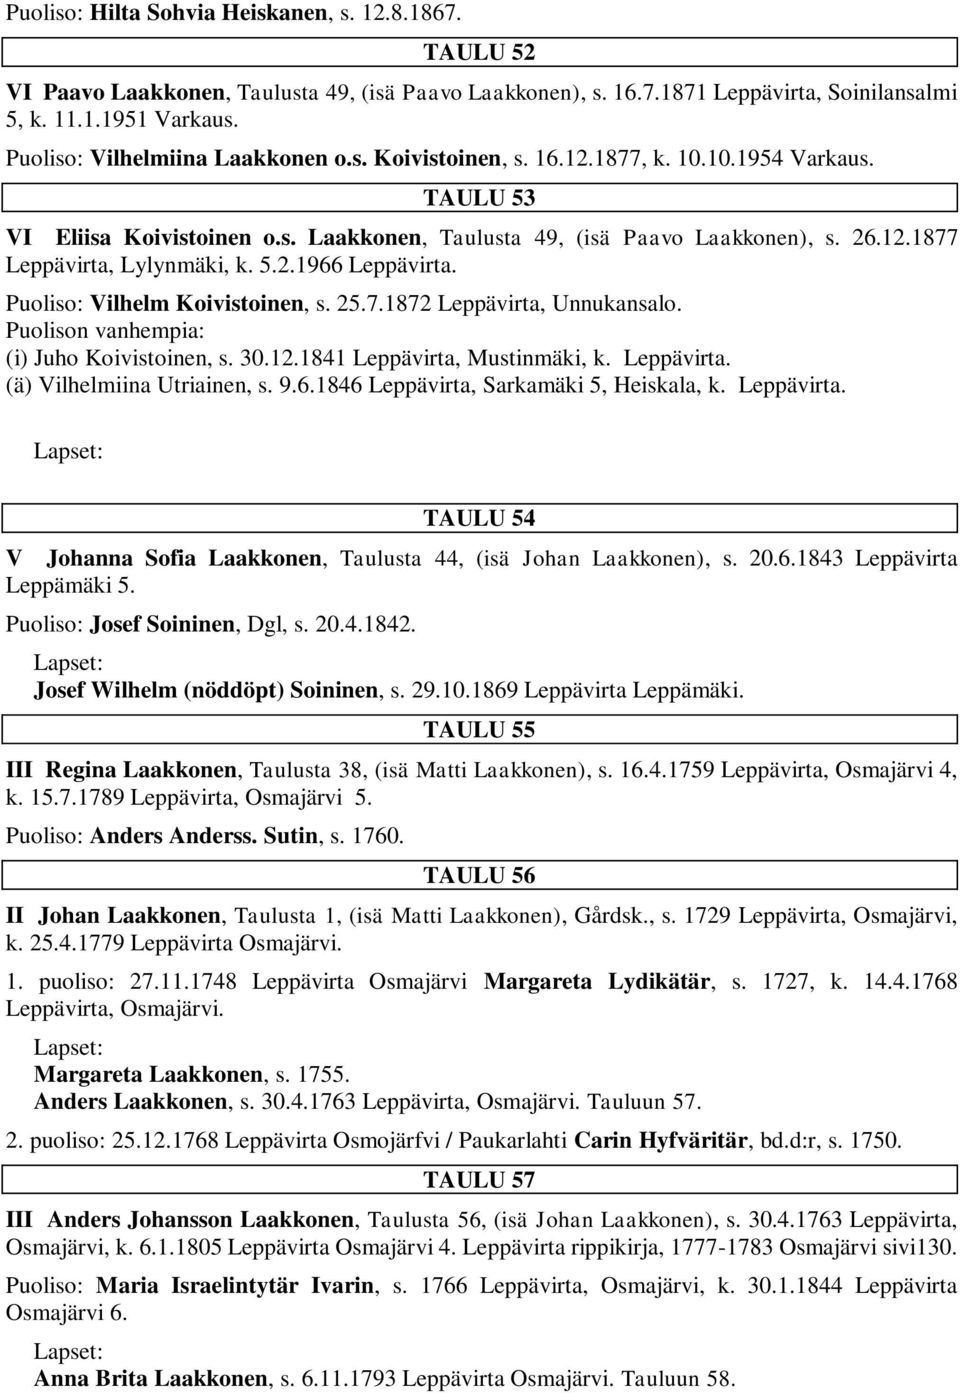 5.2.1966 Leppävirta. Puoliso: Vilhelm Koivistoinen, s. 25.7.1872 Leppävirta, Unnukansalo. (i) Juho Koivistoinen, s. 30.12.1841 Leppävirta, Mustinmäki, k. Leppävirta. (ä) Vilhelmiina Utriainen, s. 9.6.1846 Leppävirta, Sarkamäki 5, Heiskala, k.